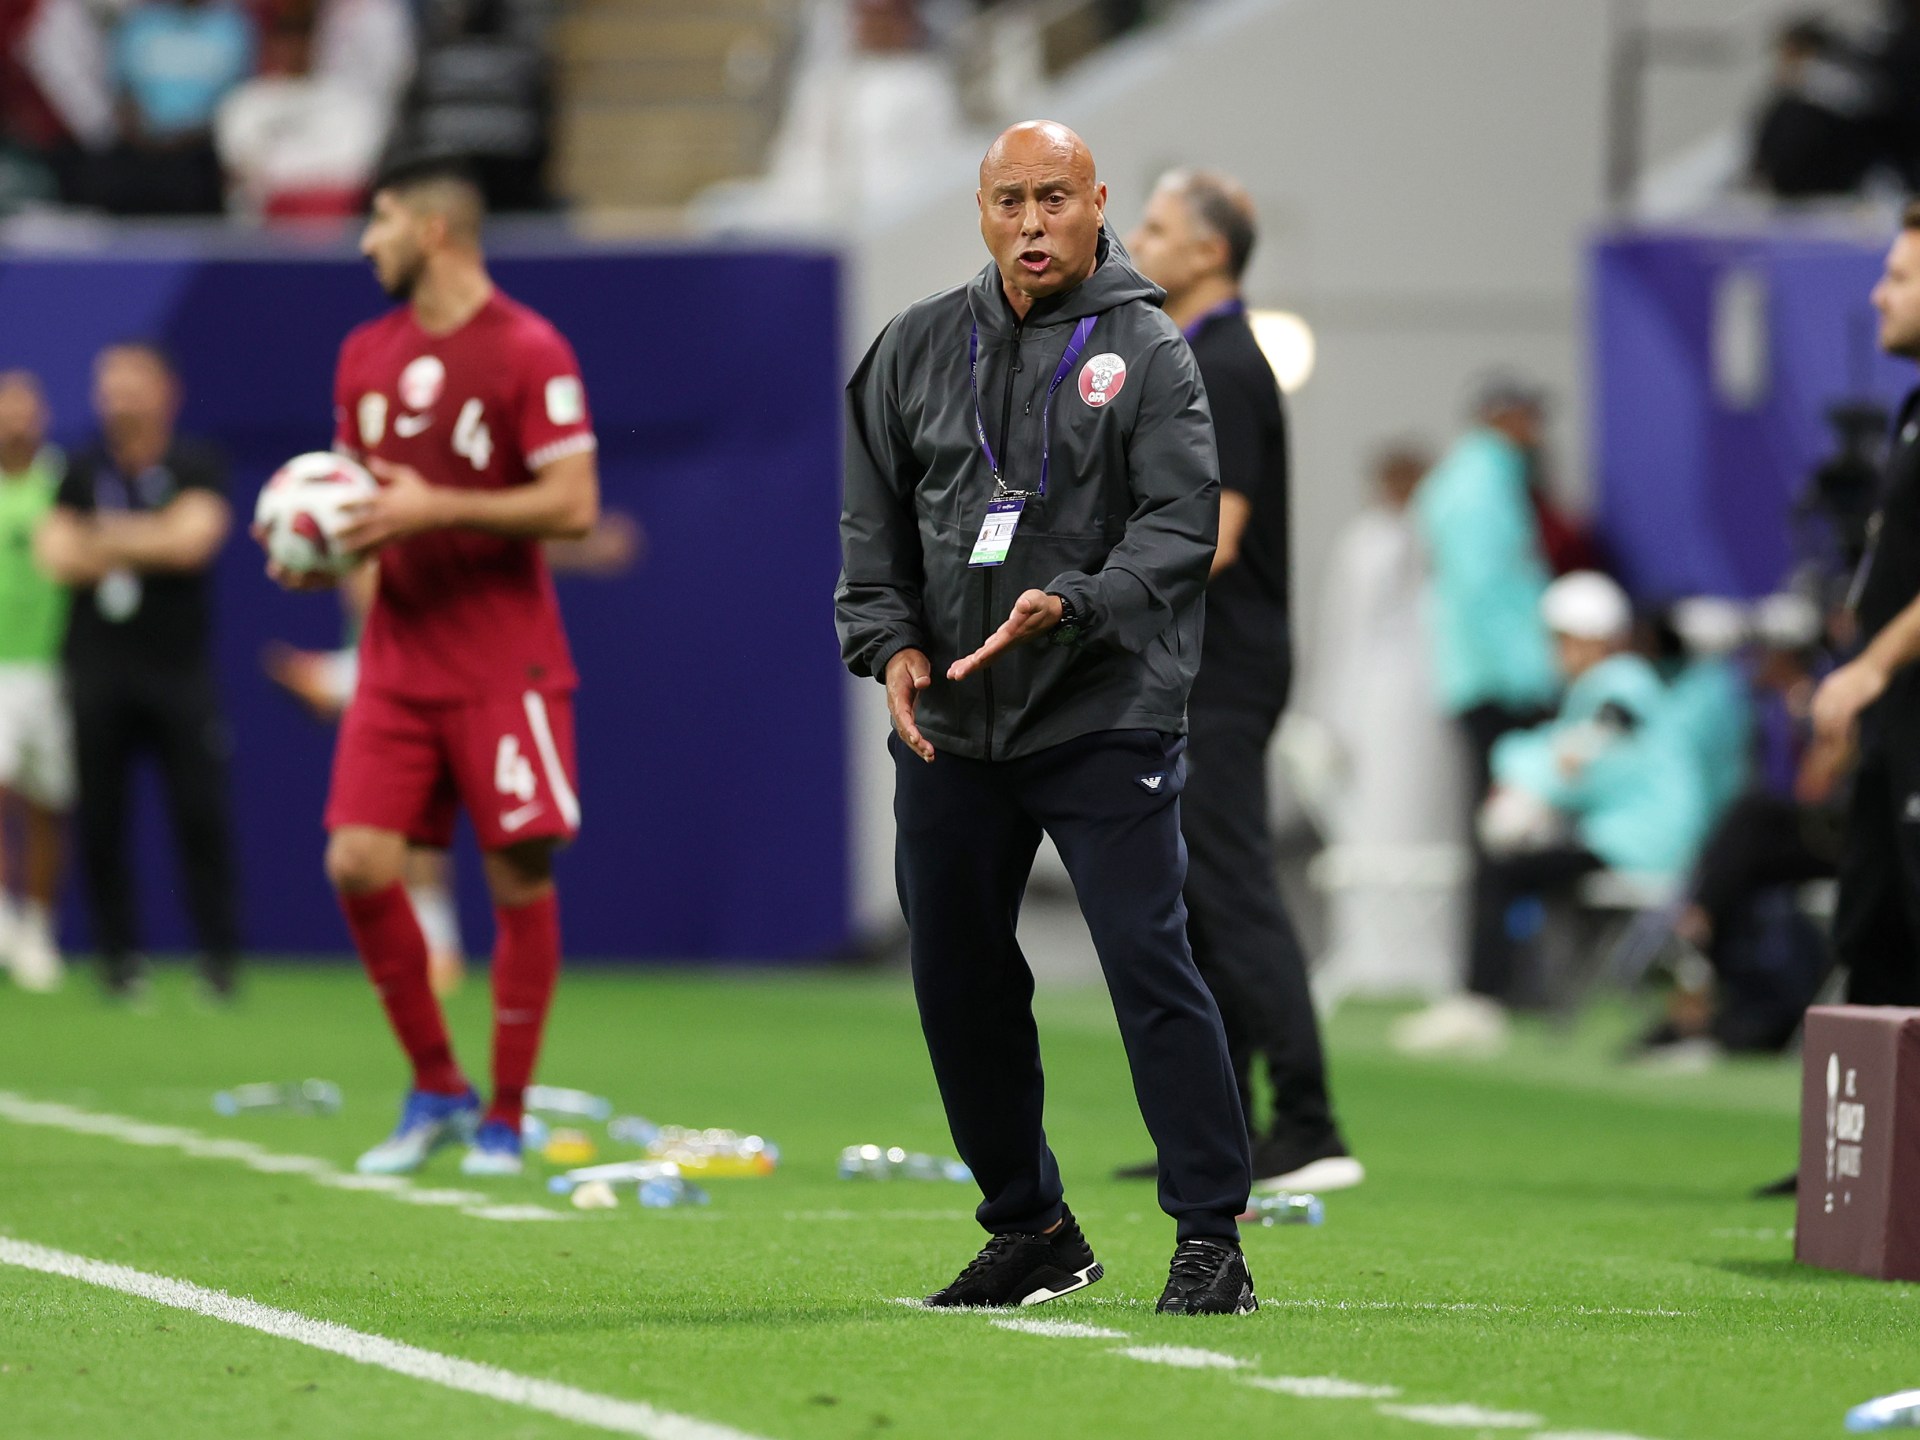 مدرب قطر يقلل من أهمية هوية حكم مواجهة إيران بنصف نهائي كأس آسيا | رياضة – البوكس نيوز